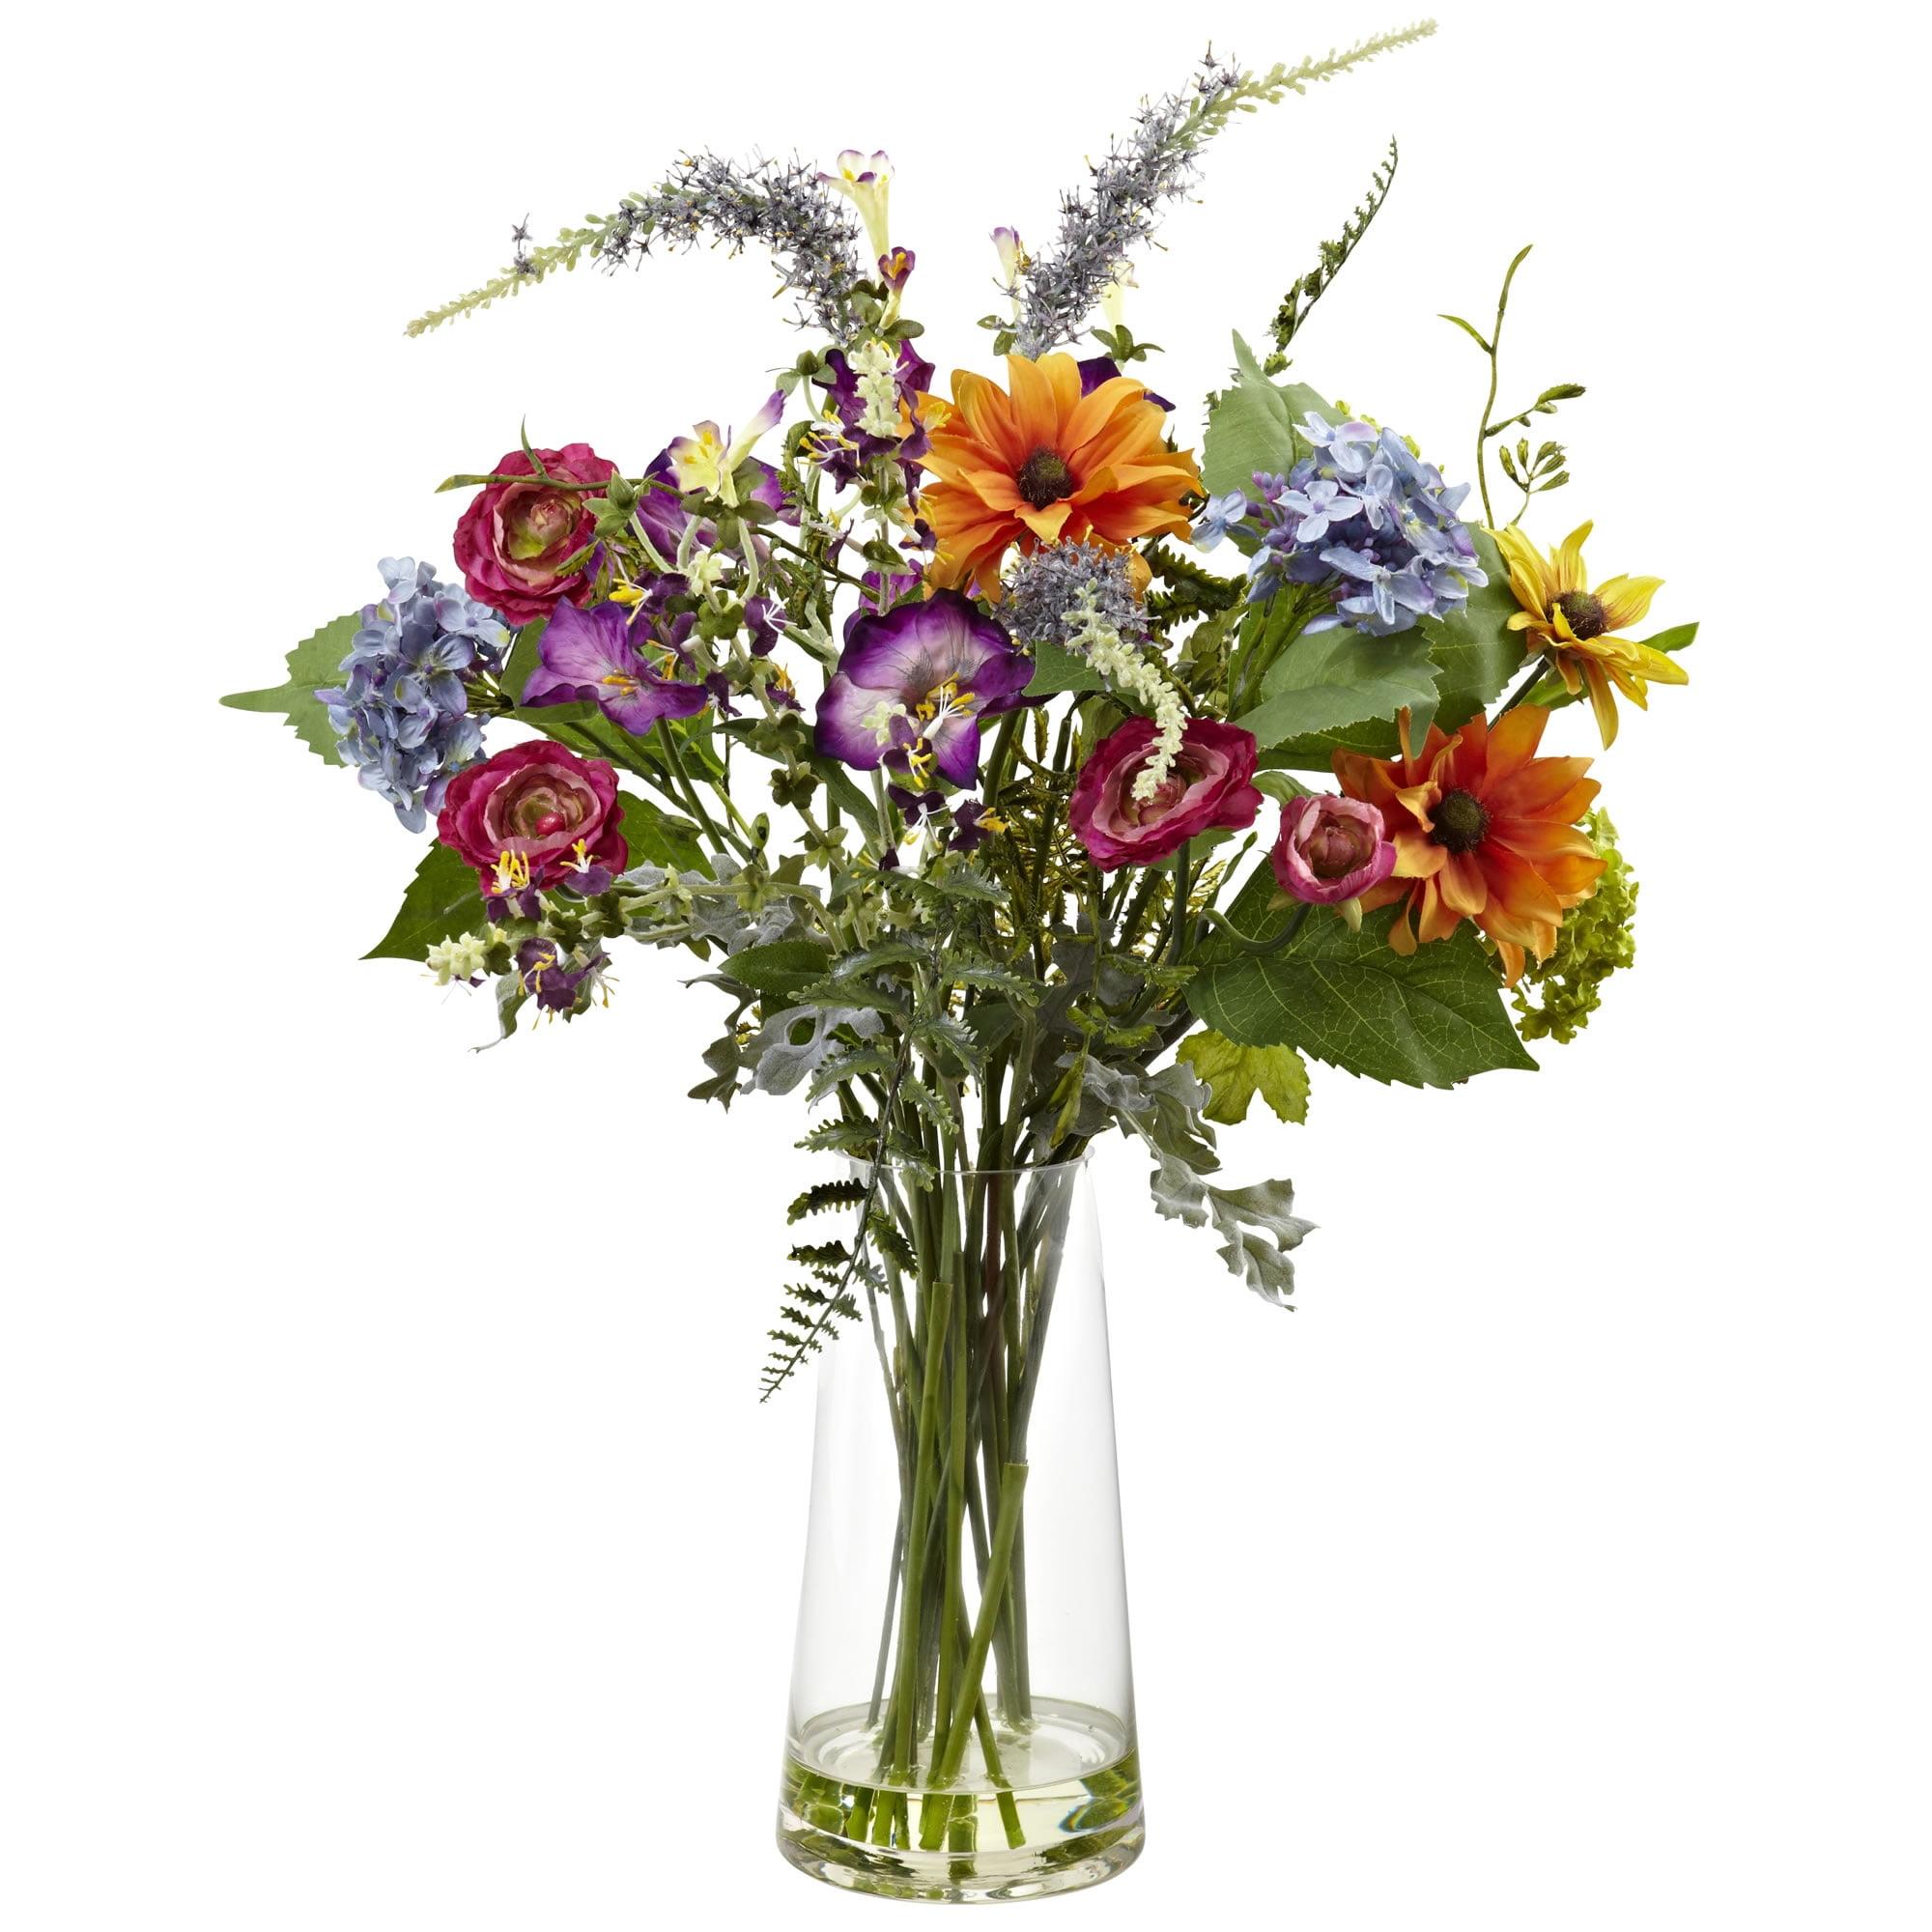 Spring Splendor 24" Mixed Floral Tabletop Arrangement in Glass Vase